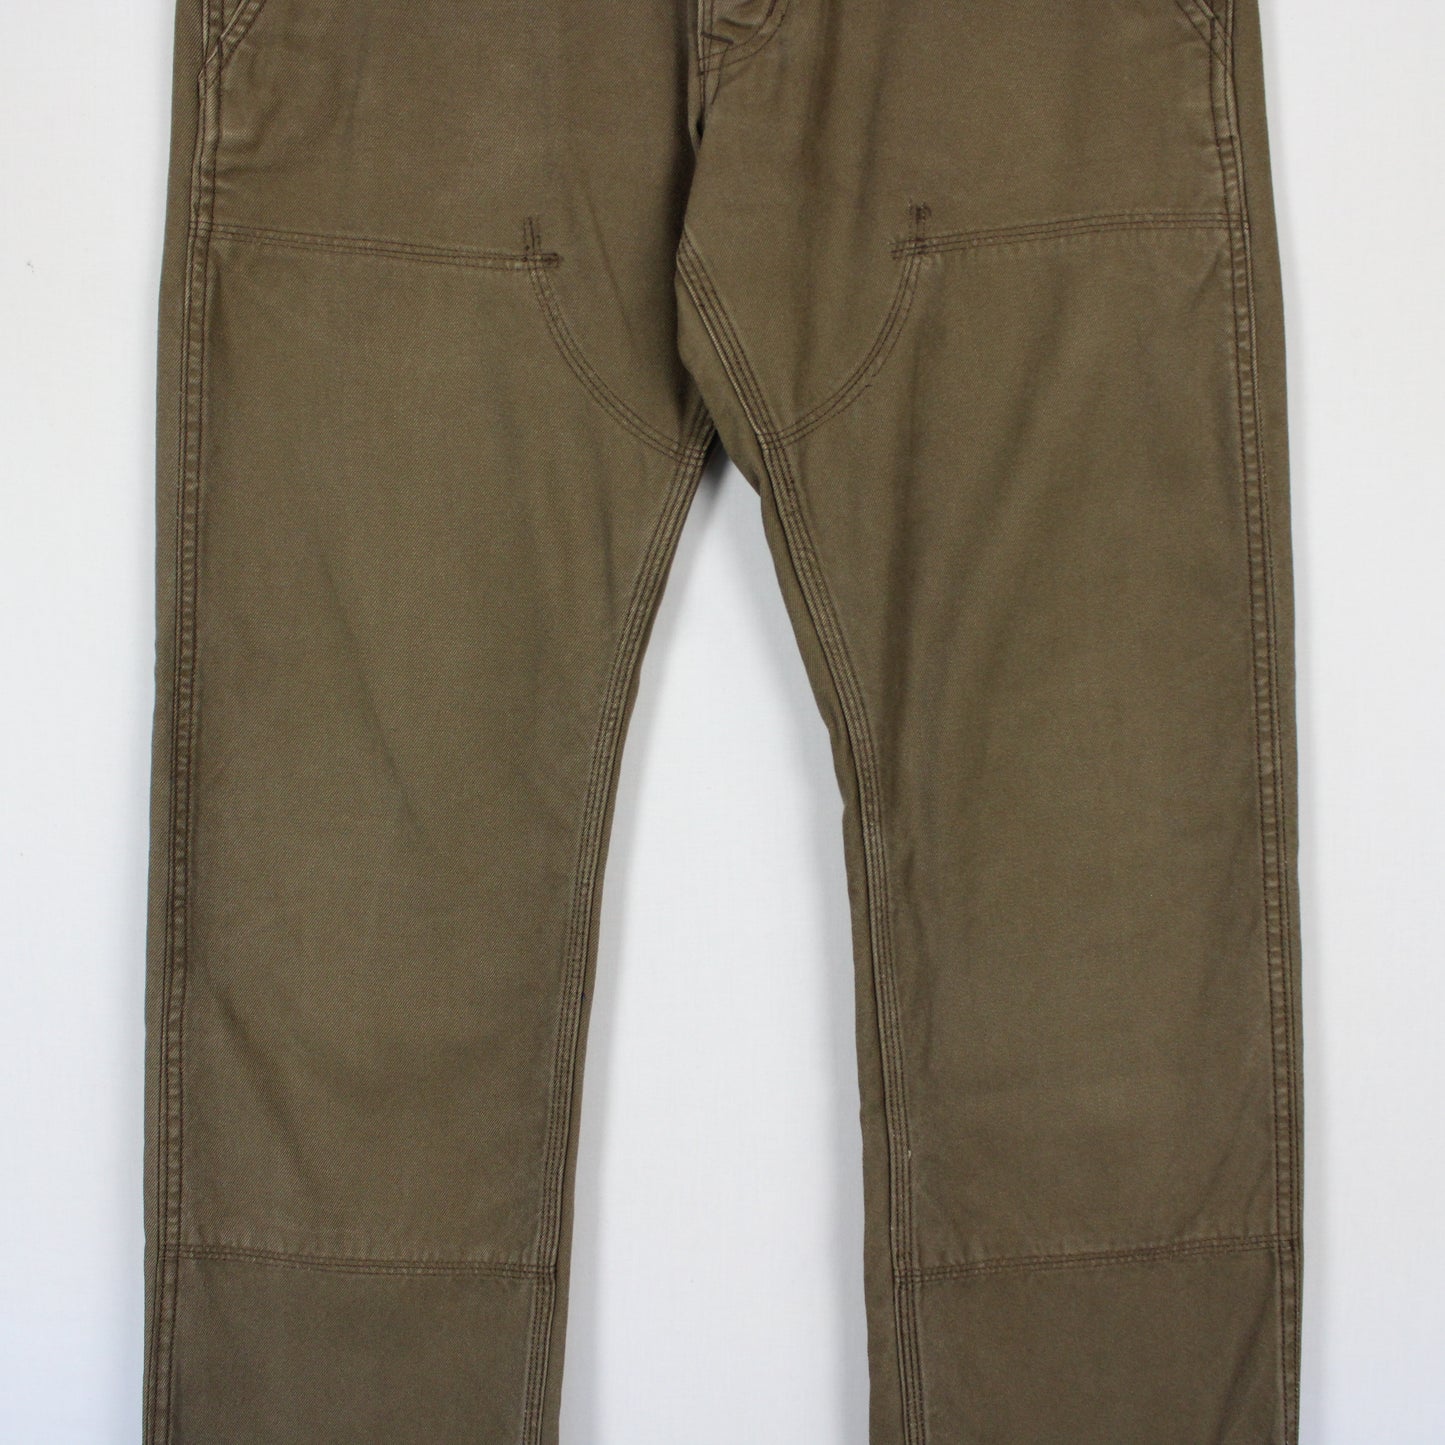 Vintage Levi's Double Knee Pants - 33x32